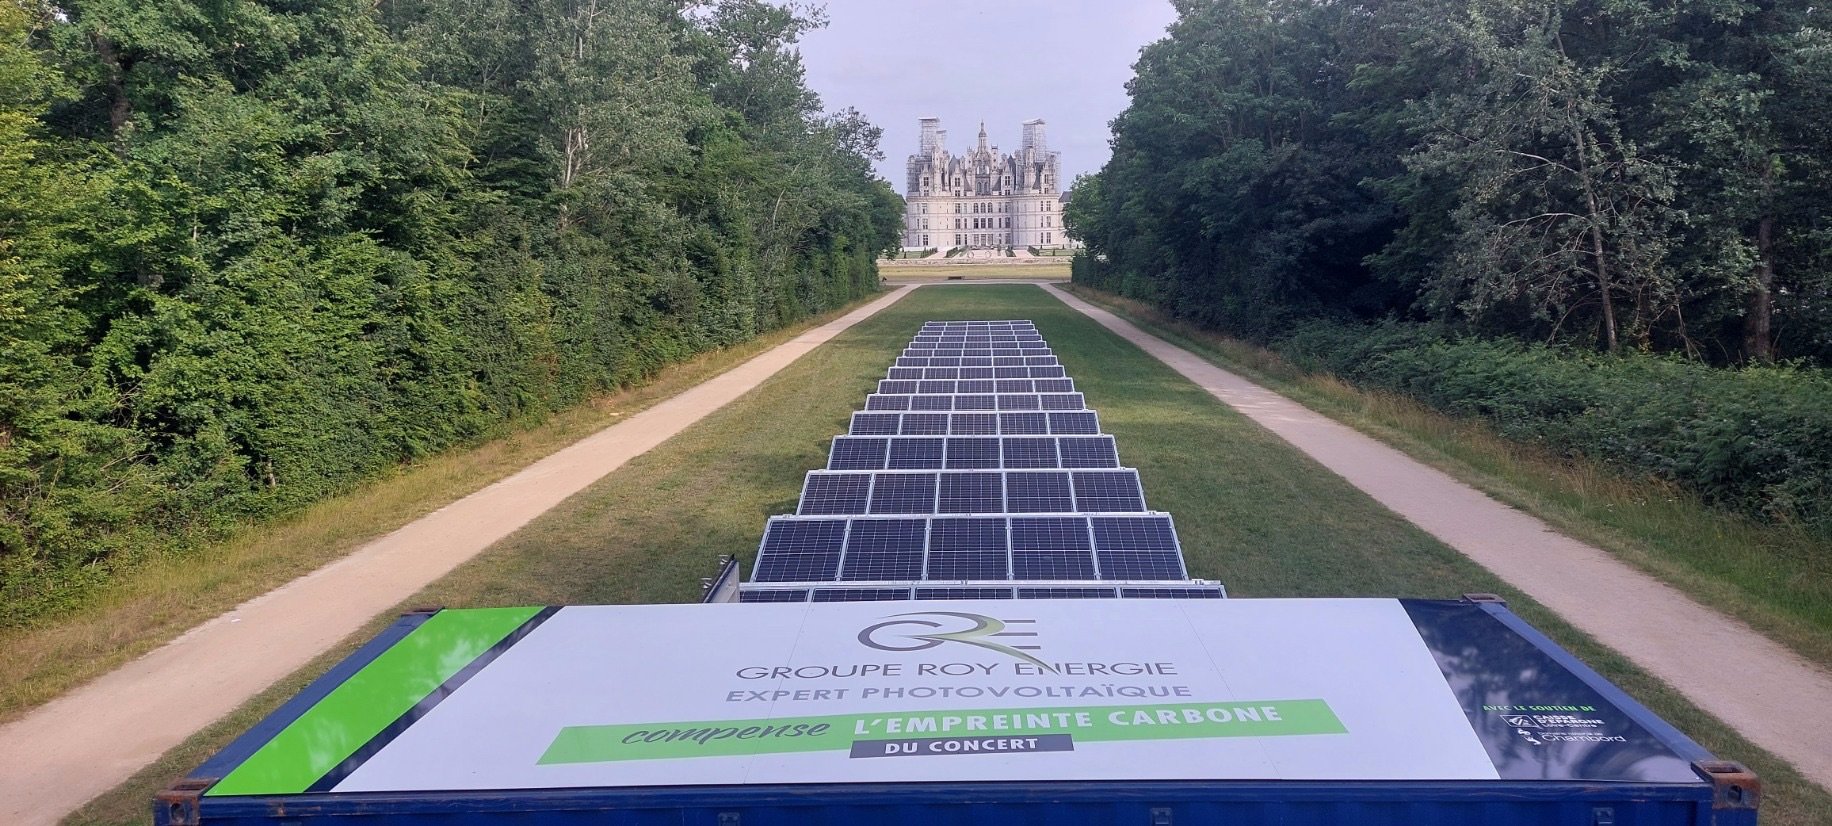 Avec cette centrale solaire, Groupe Roy Energie, implanté à Orléans, ambitionne de produire deux fois plus d'énergie que ce que va consommer le concert. Groupe Roy Energie